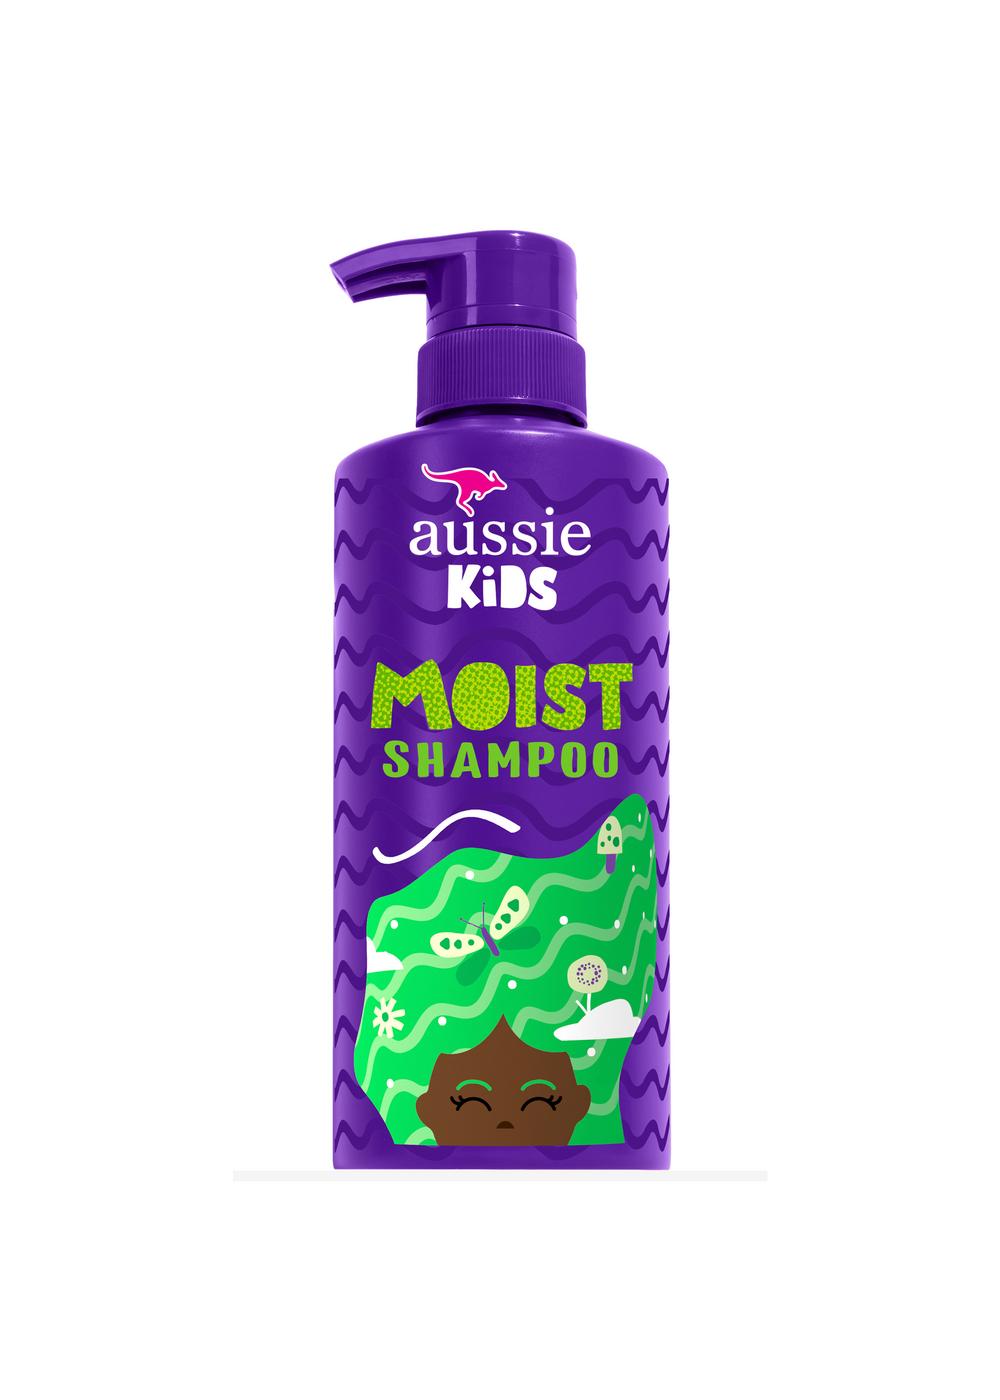 Aussie Kids Shampoo; image 6 of 8